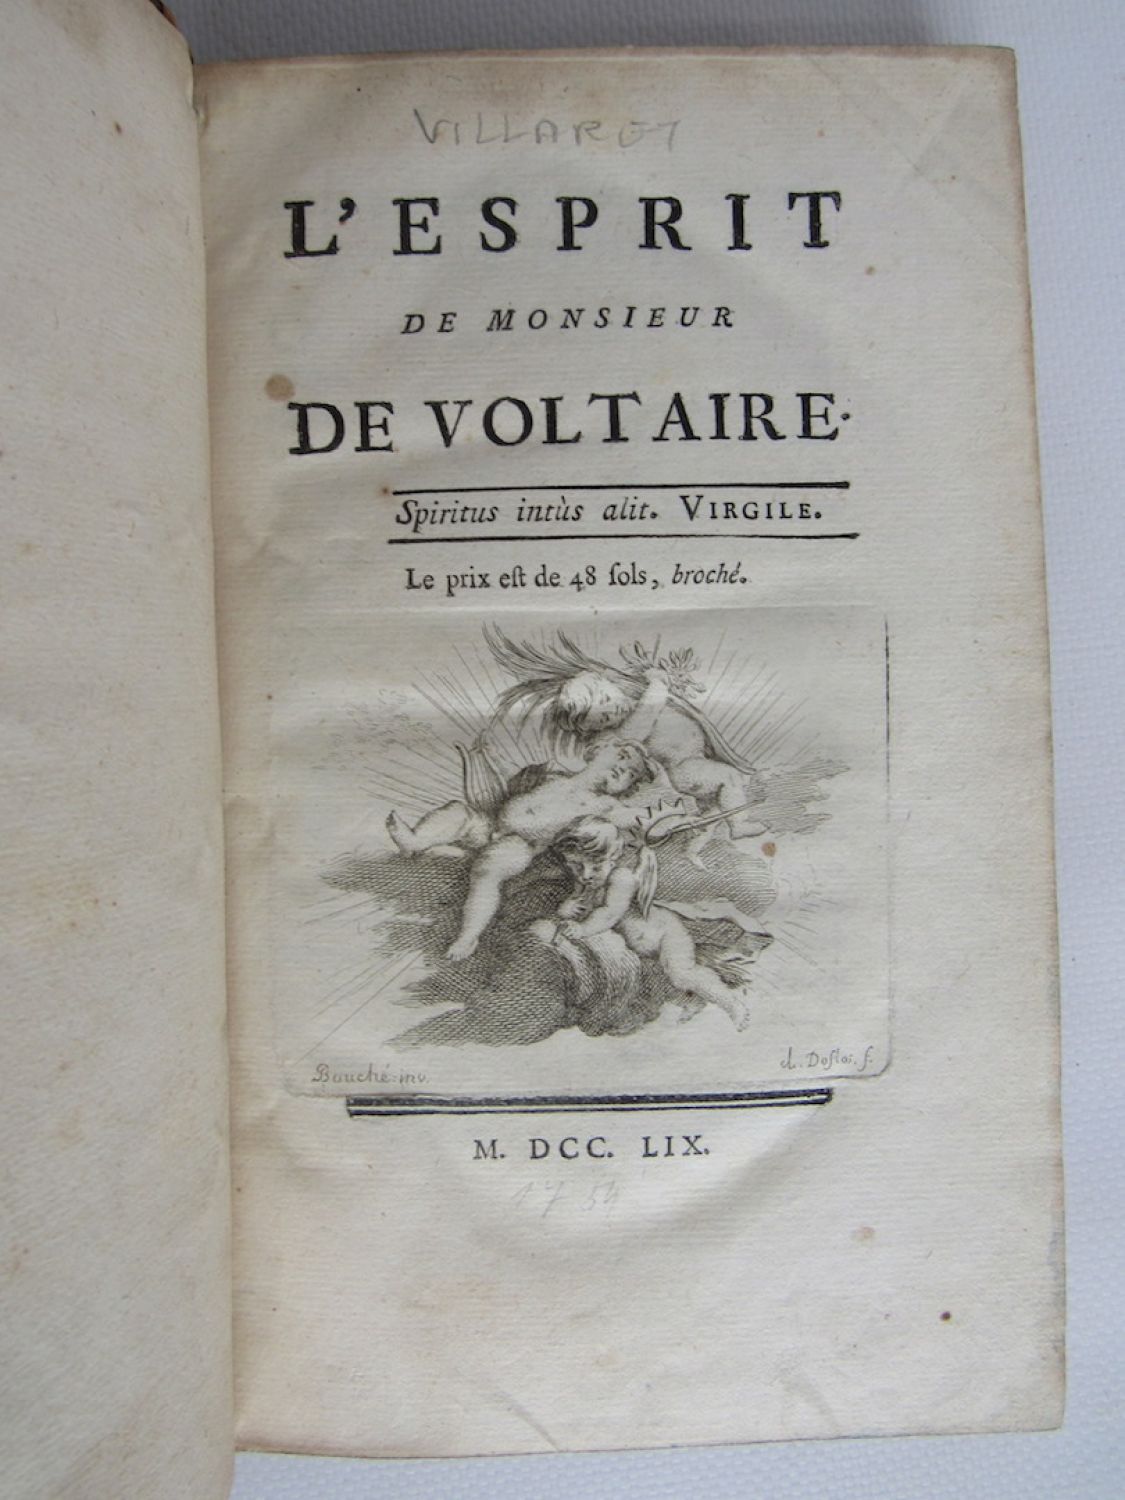 買う安いVoltaire著 Claude Villaret編『L’esprit de monsieur De Voltaire』1759年初版本 ヴォルテール名言集 画集